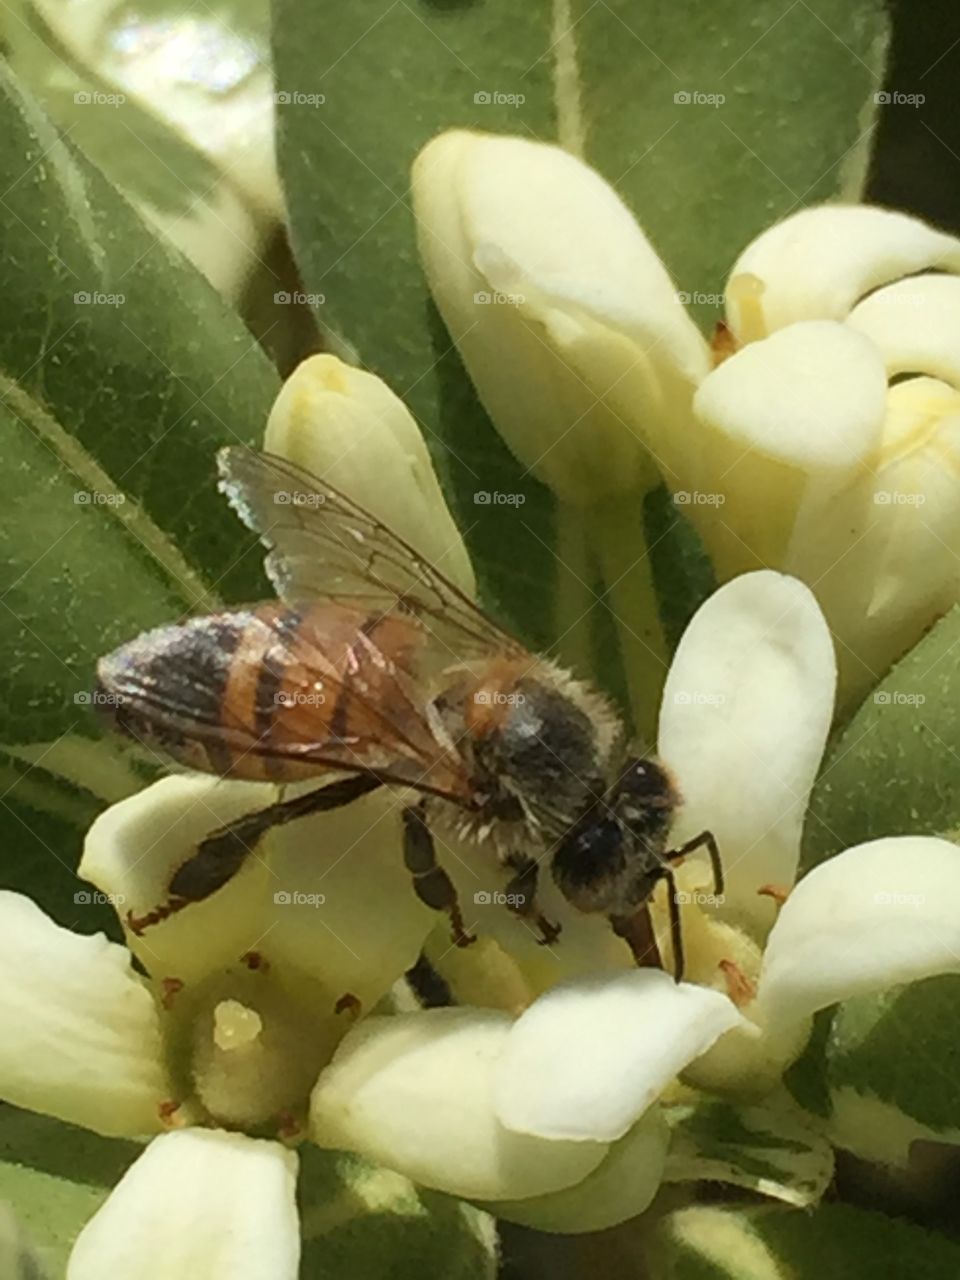 A honey bee enjoying the nectar of a little flower.